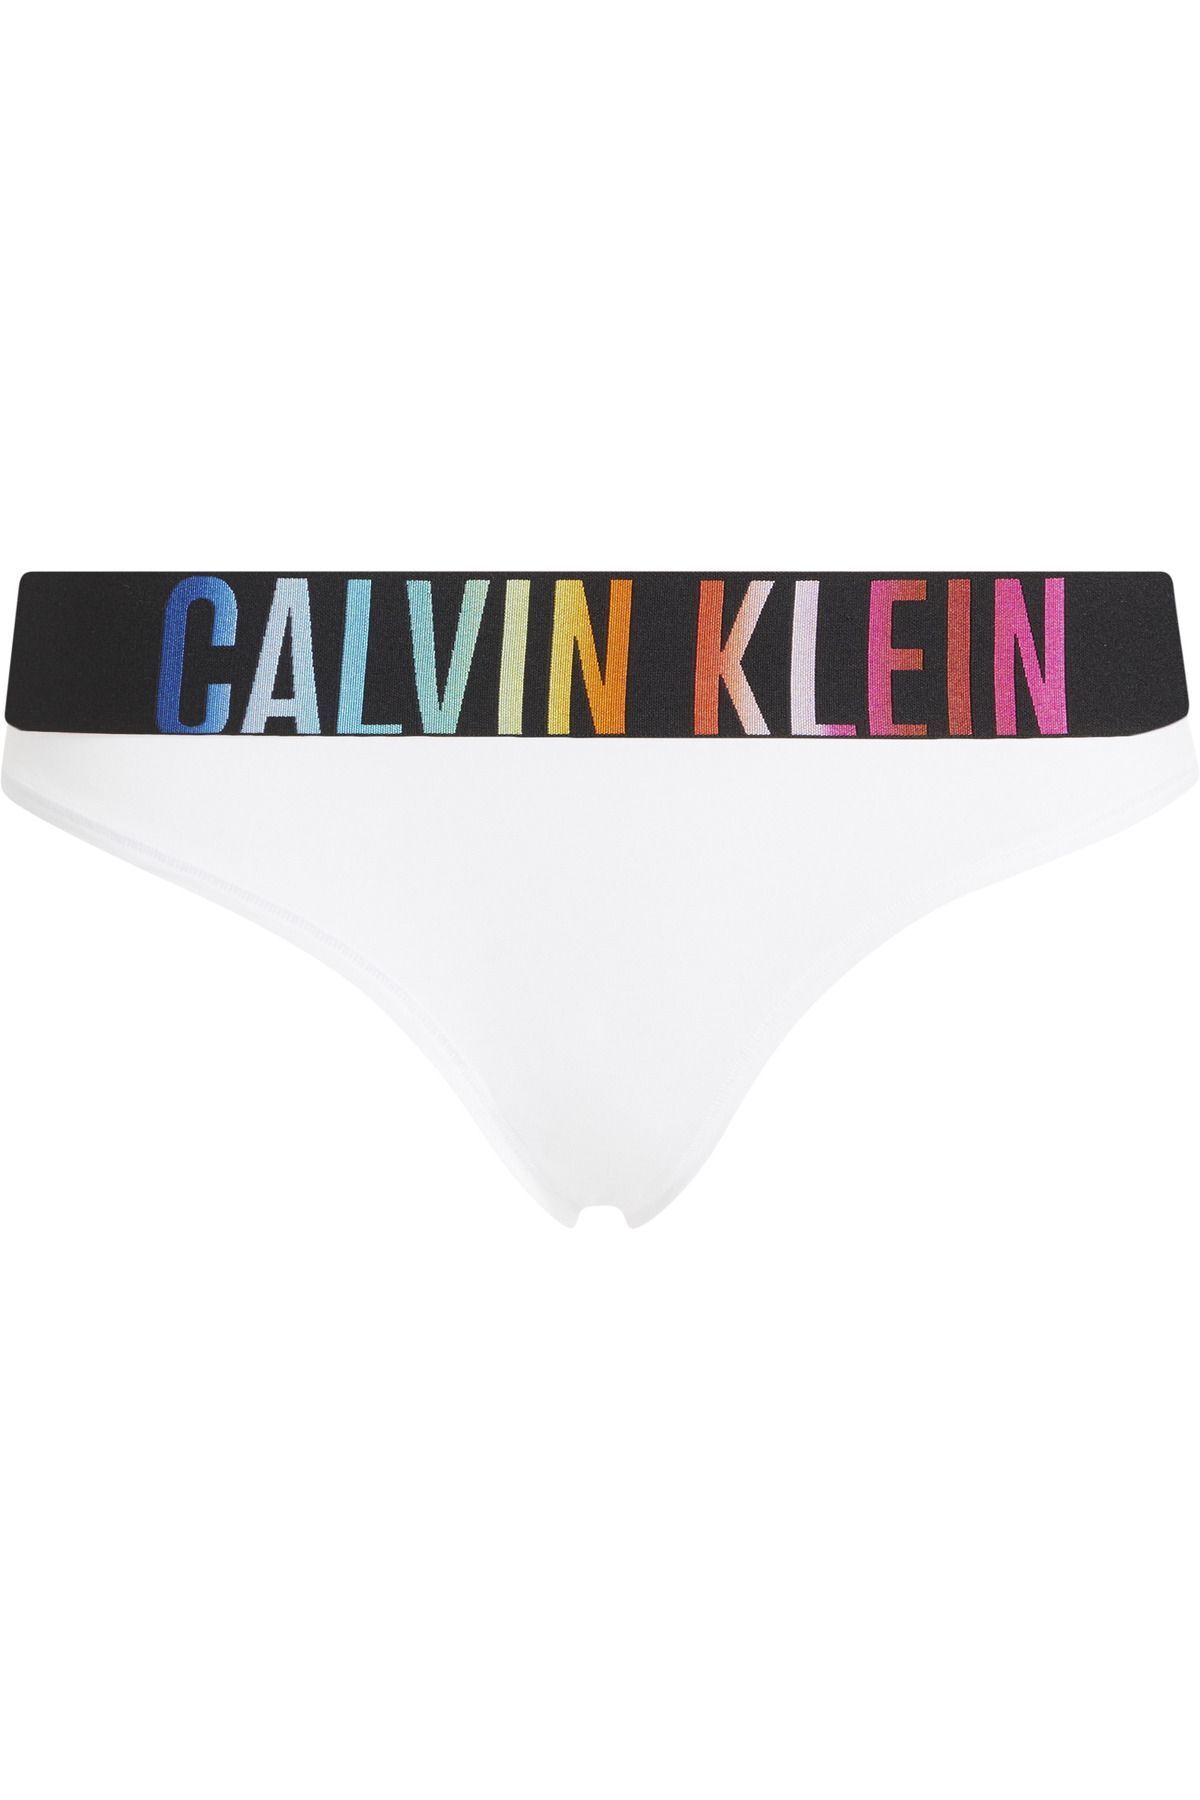 Calvin Klein Kadın Marka Logolu Elastik Bantlı Günlük Kullanıma Uygun White Külot 000qf7835e-100